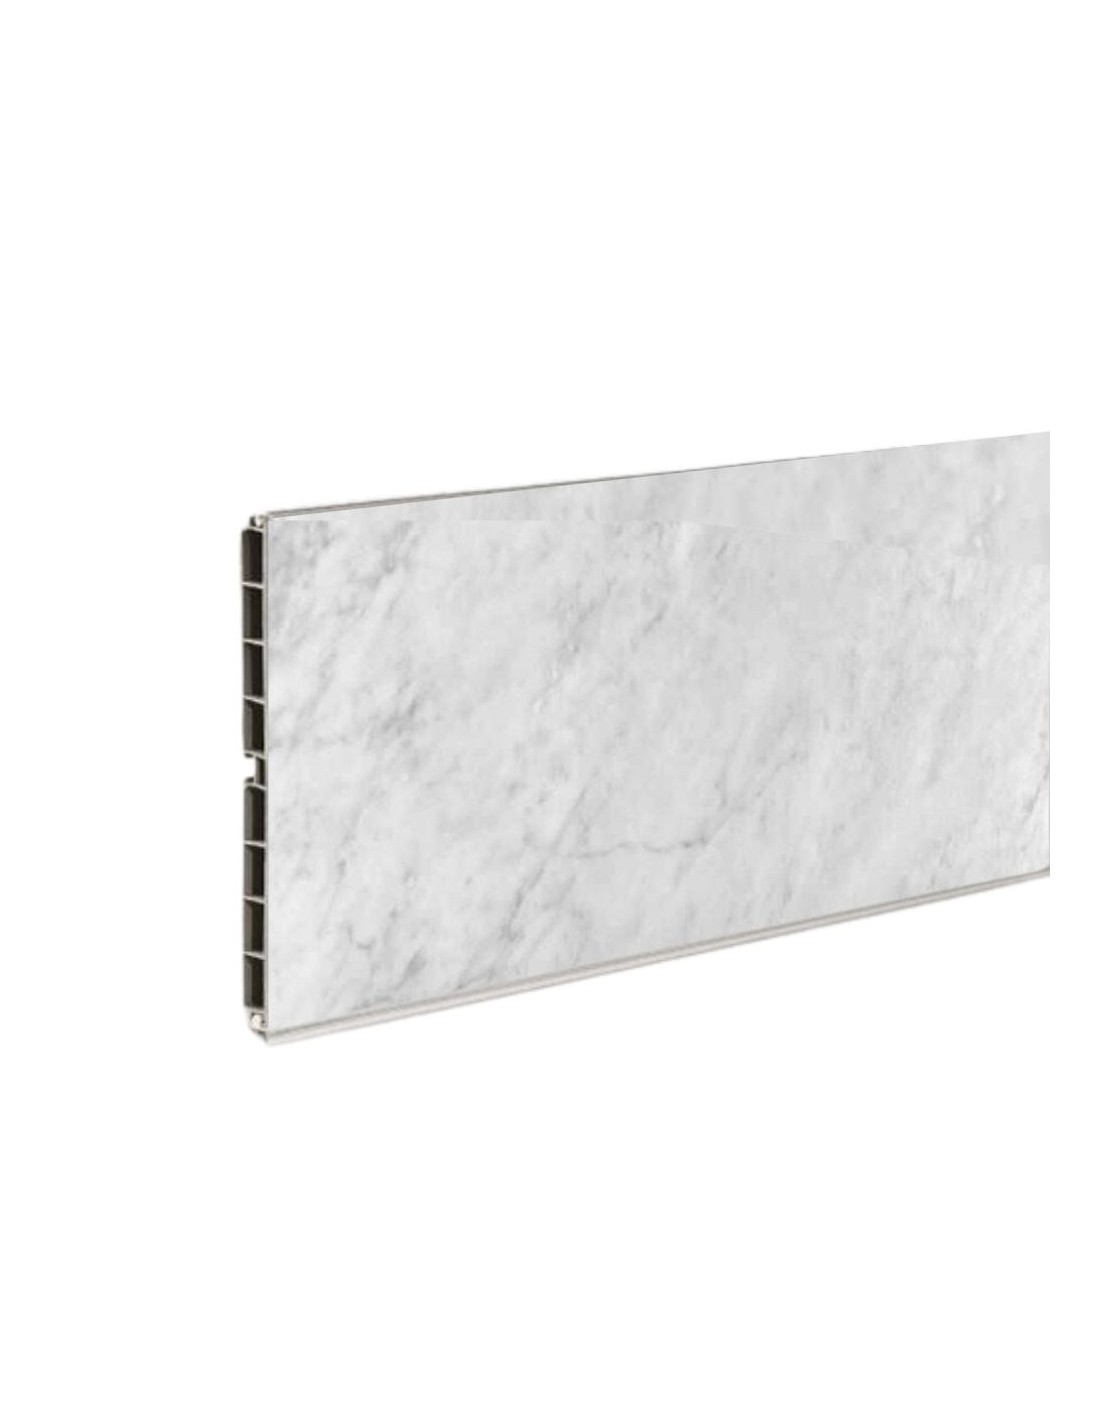 Zoccolo per cucina PVC colore effetto marmo carrara bianco H15 4 mt ZOCCH15033